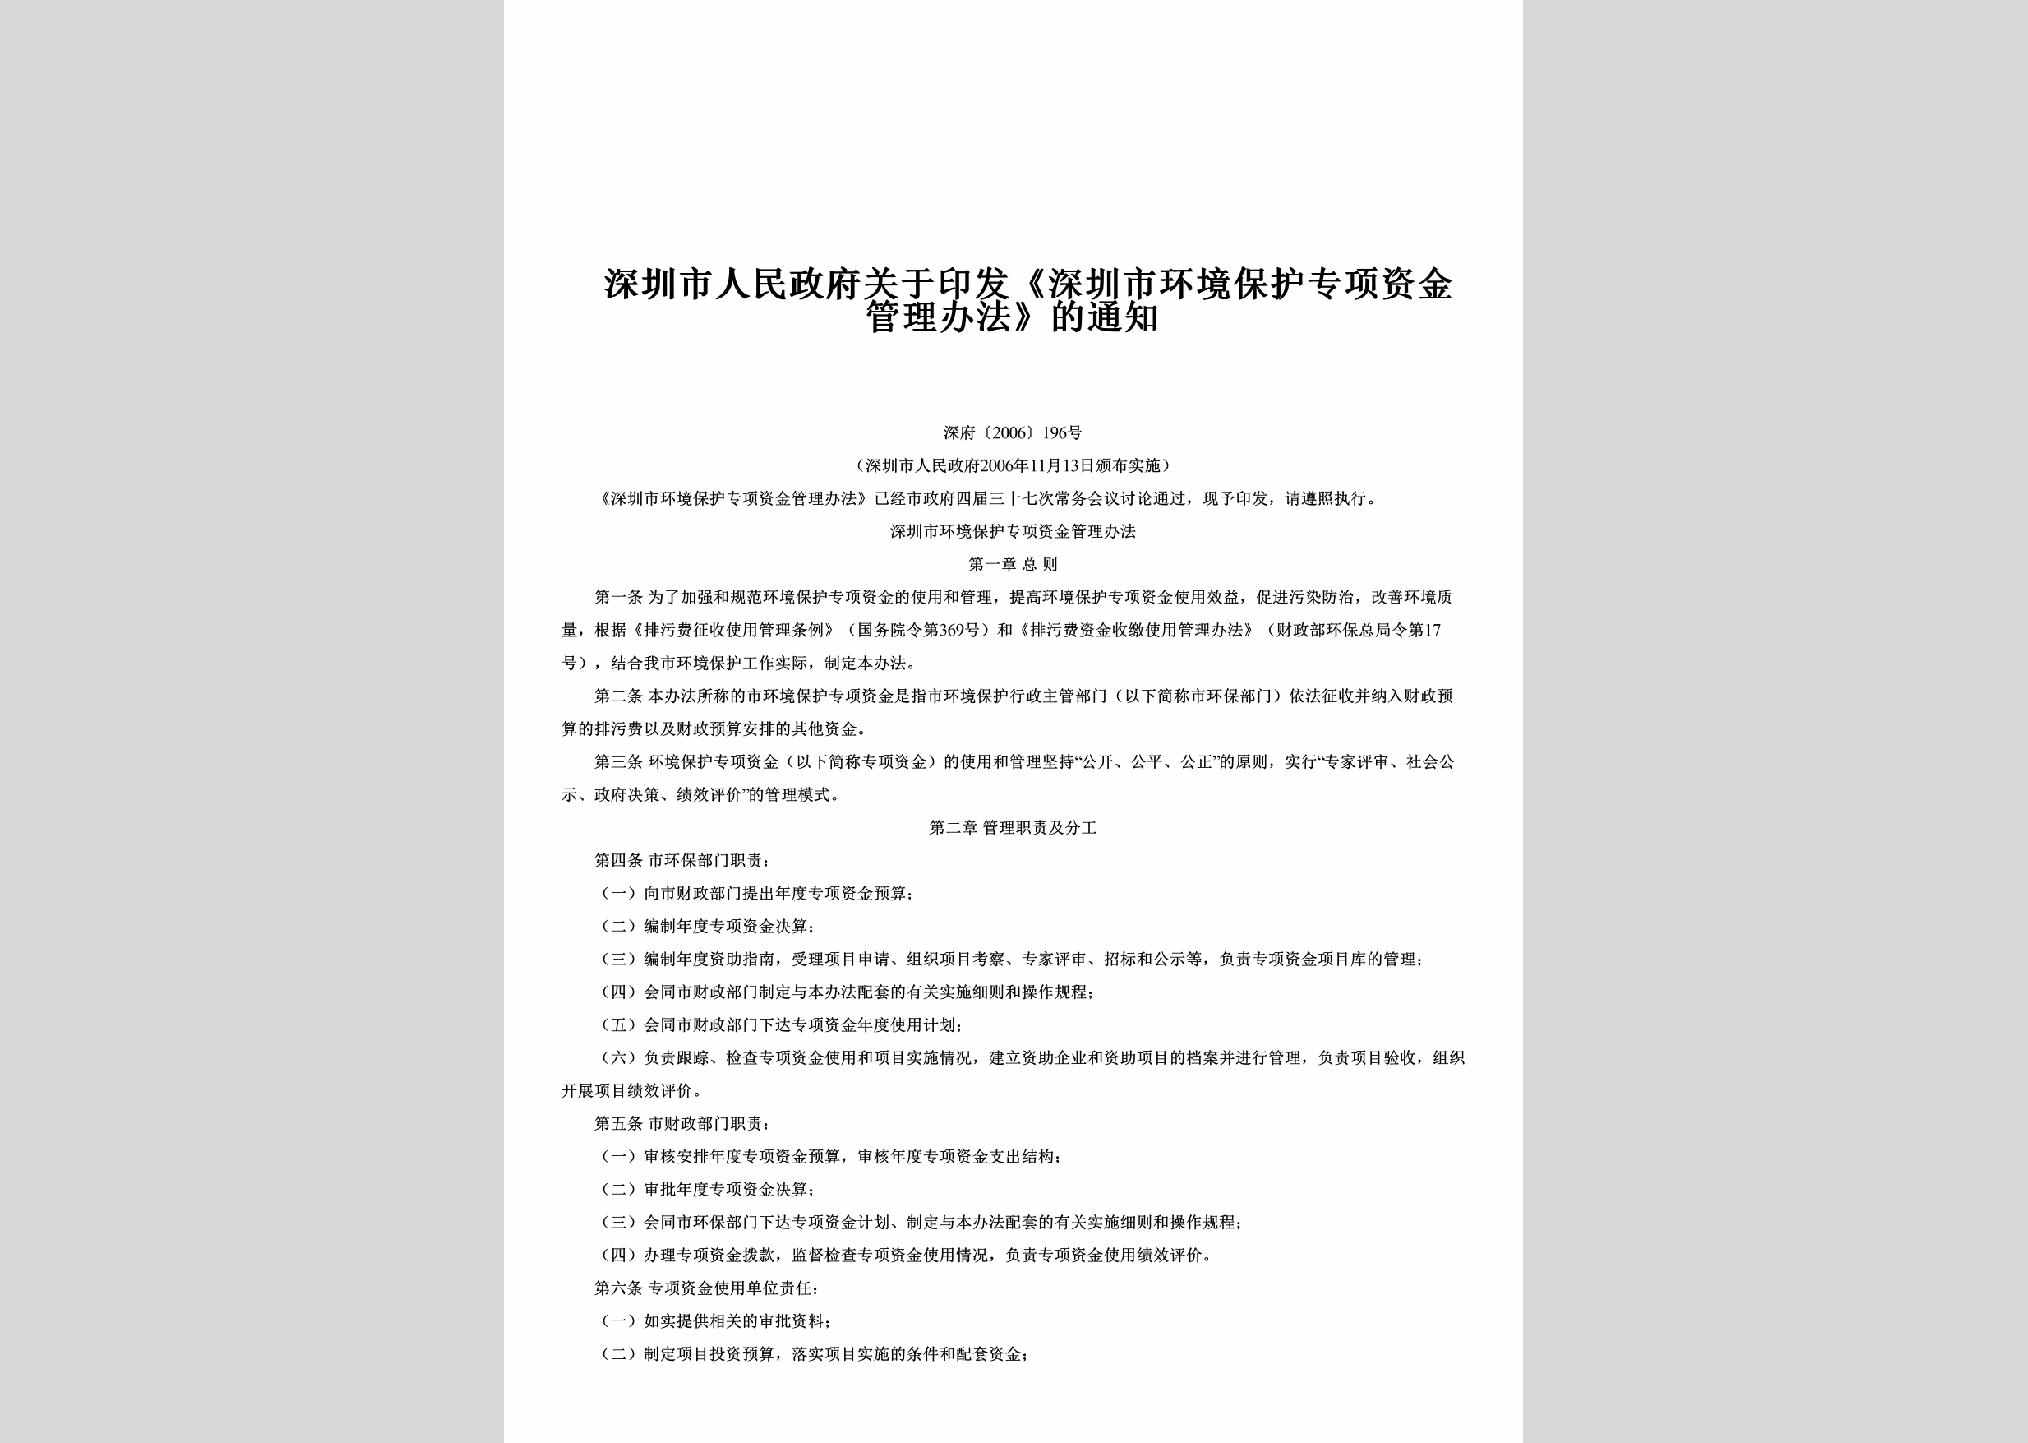 深府[2006]196号：关于印发《深圳市环境保护专项资金管理办法》的通知